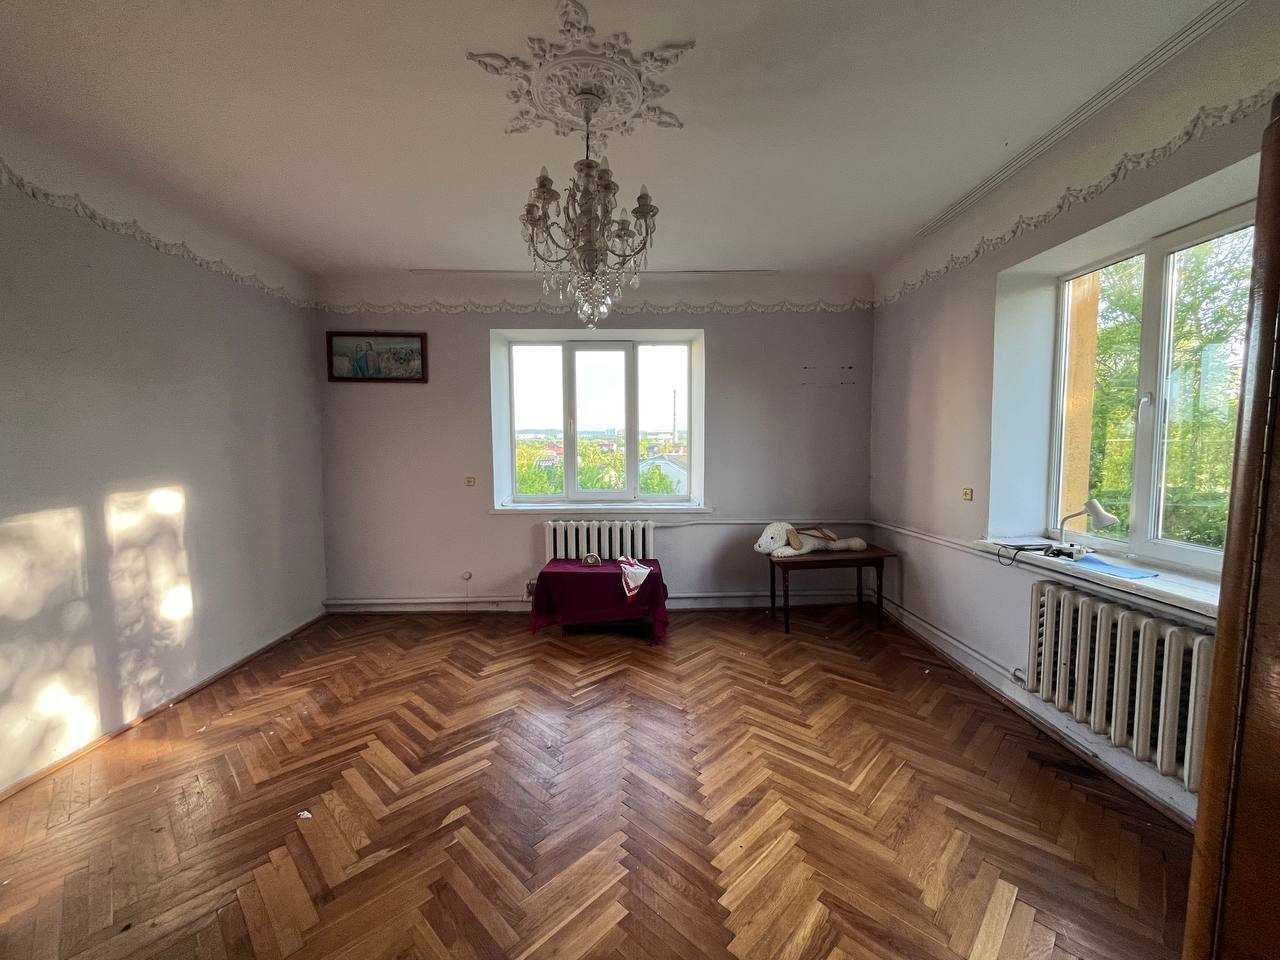 Продаж будинку в передмісті Львова ( 8км до Оперного театру )